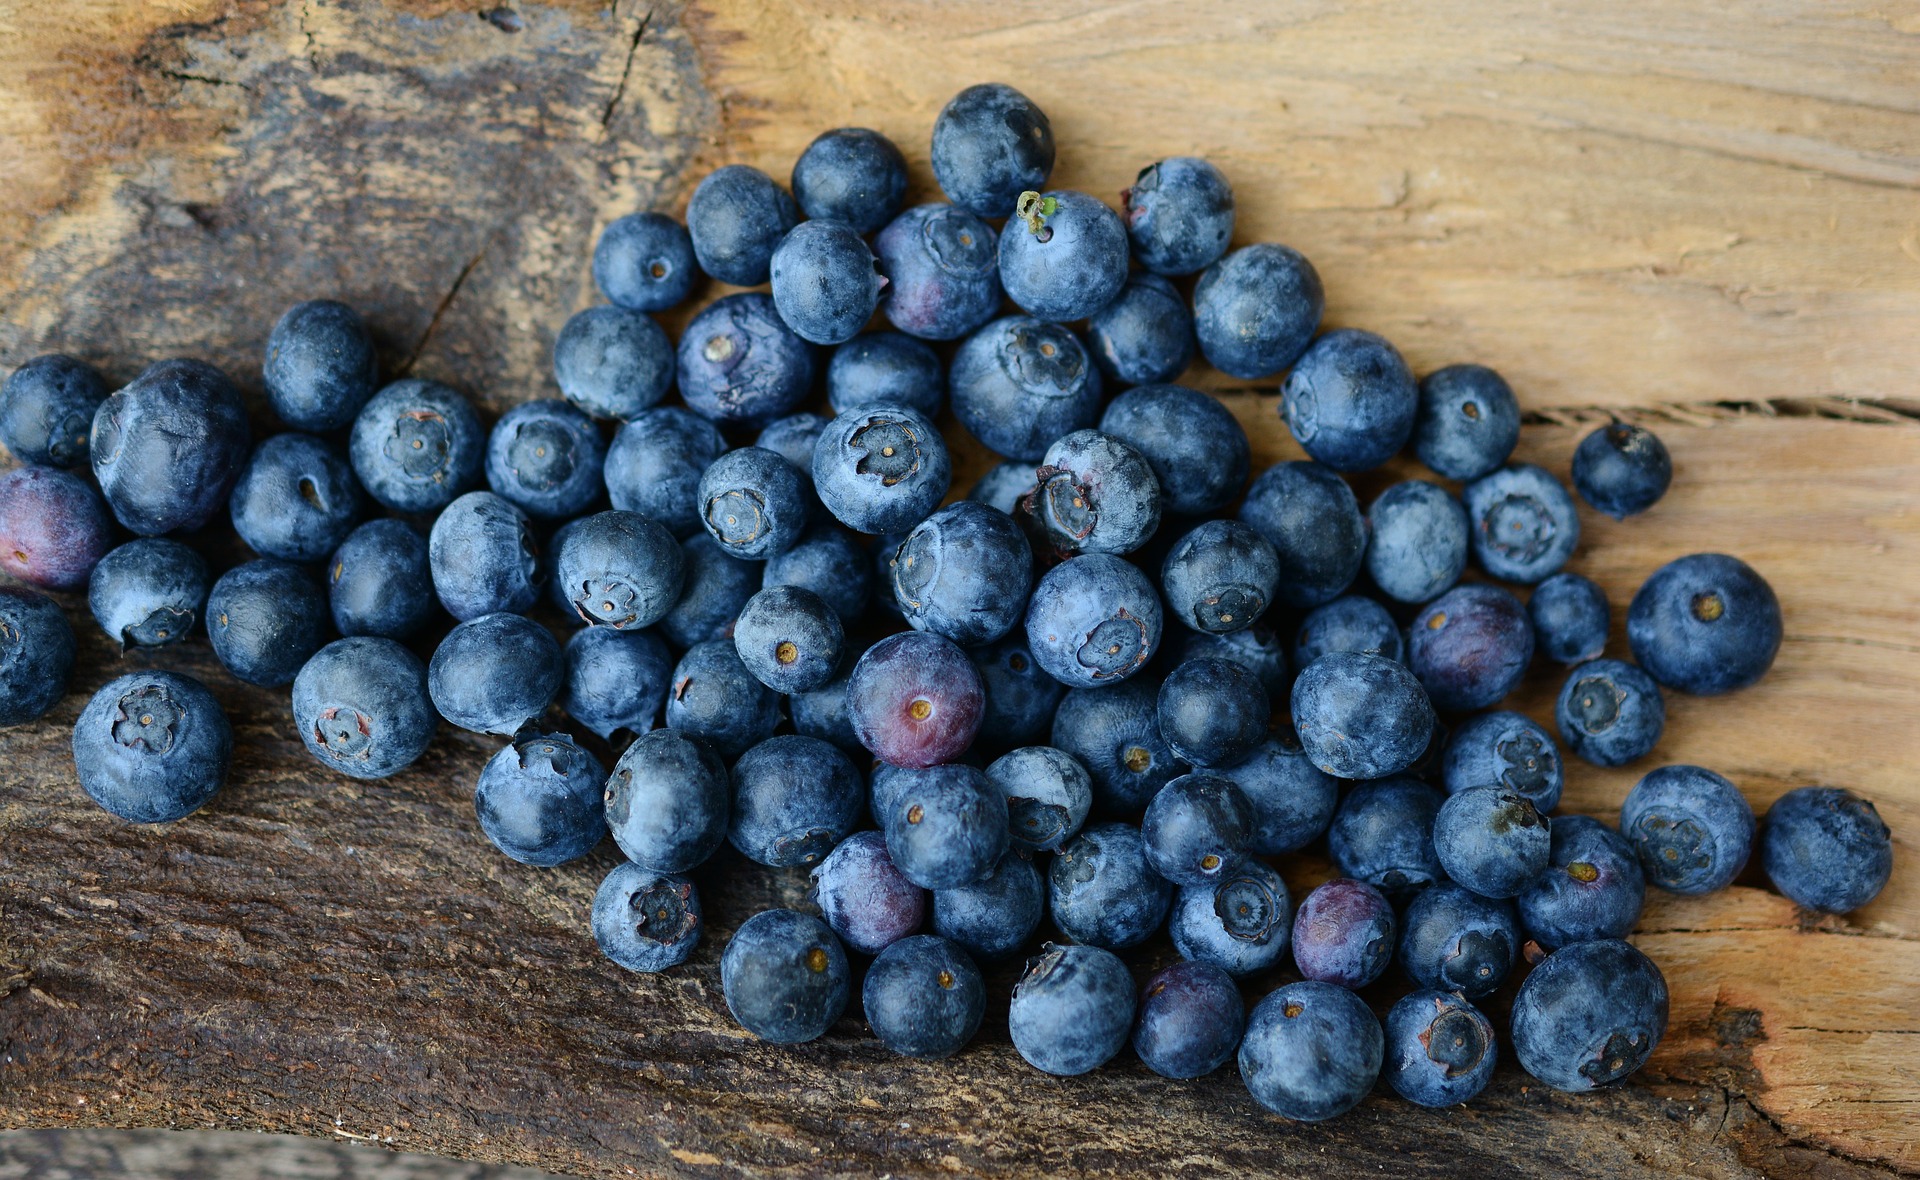 blueberries g053d95d71 1920